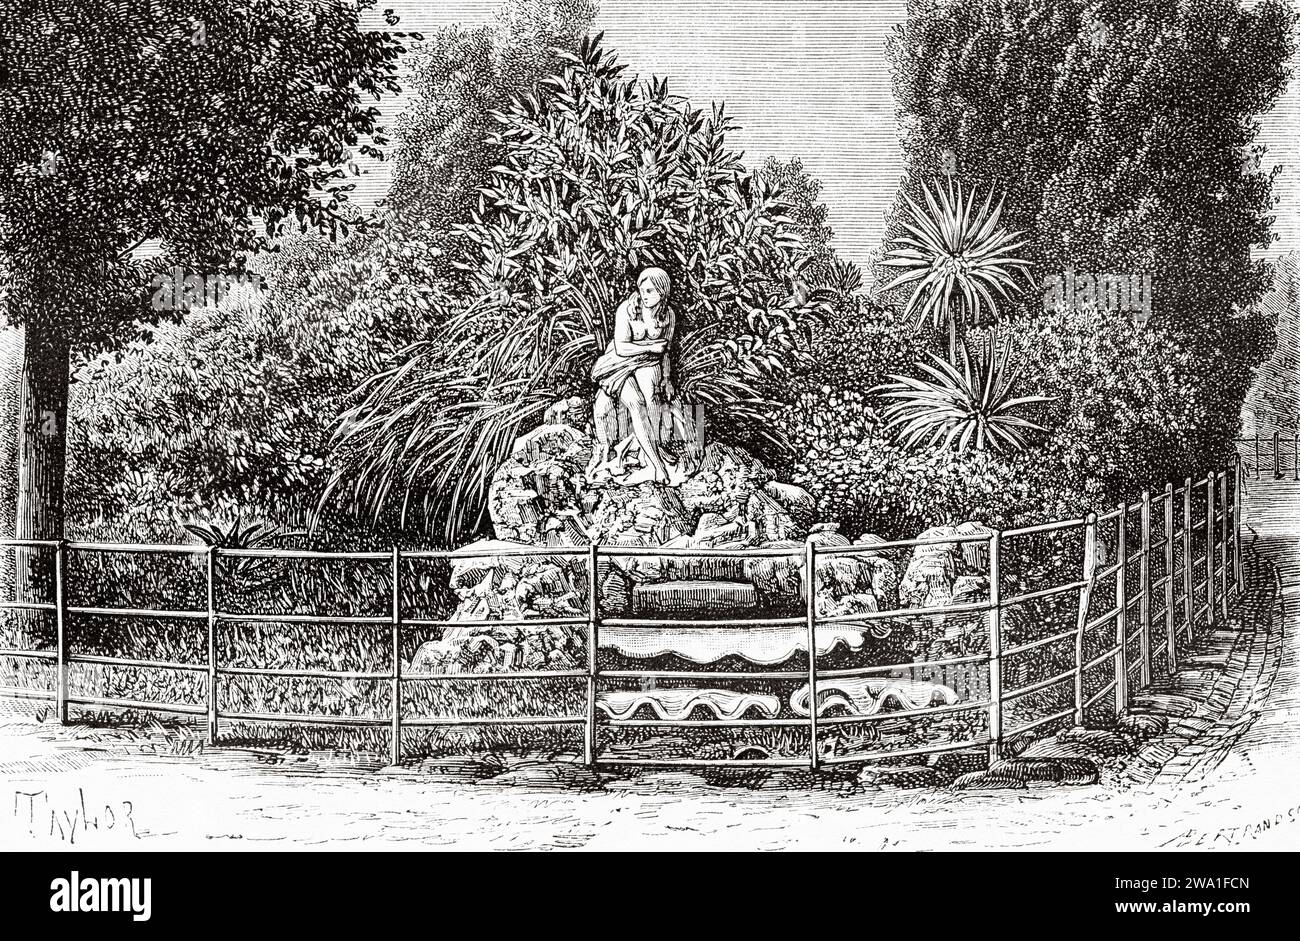 Fitzroy Gardens, Melbourne. Victoria, Australia. Sei mesi in Australia 1878 da Desire Charnay (1828 - 1915) incisione del vecchio XIX secolo da le Tour du Monde 1880 Foto Stock